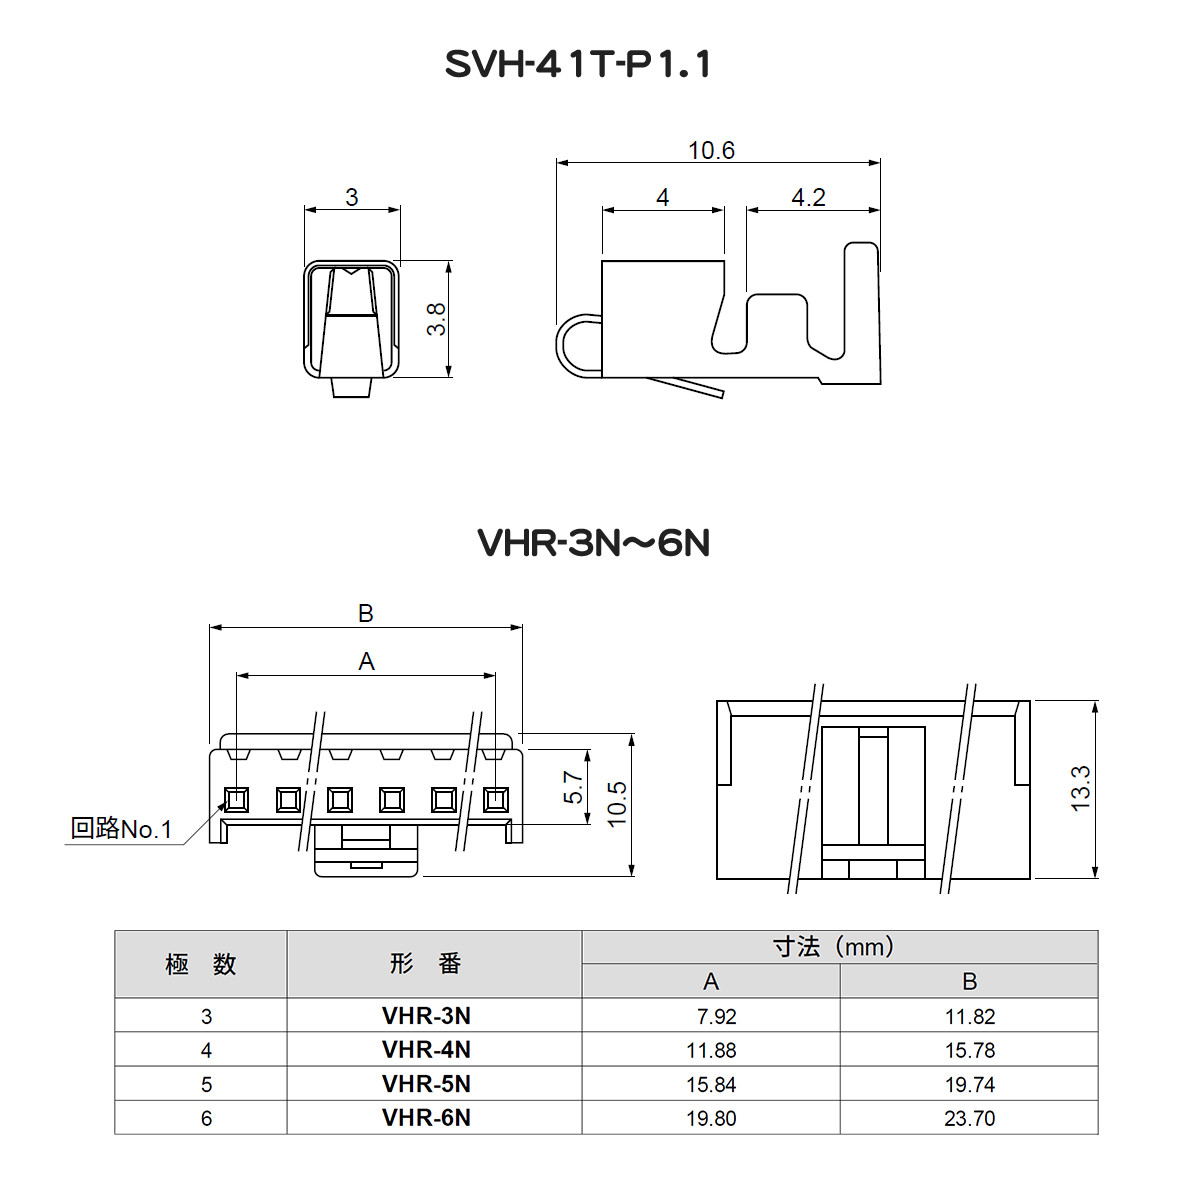 【日圧】 基板対電線接続コネクタ VHRシリーズ用ハウジング 【VHR-3N〜6N】